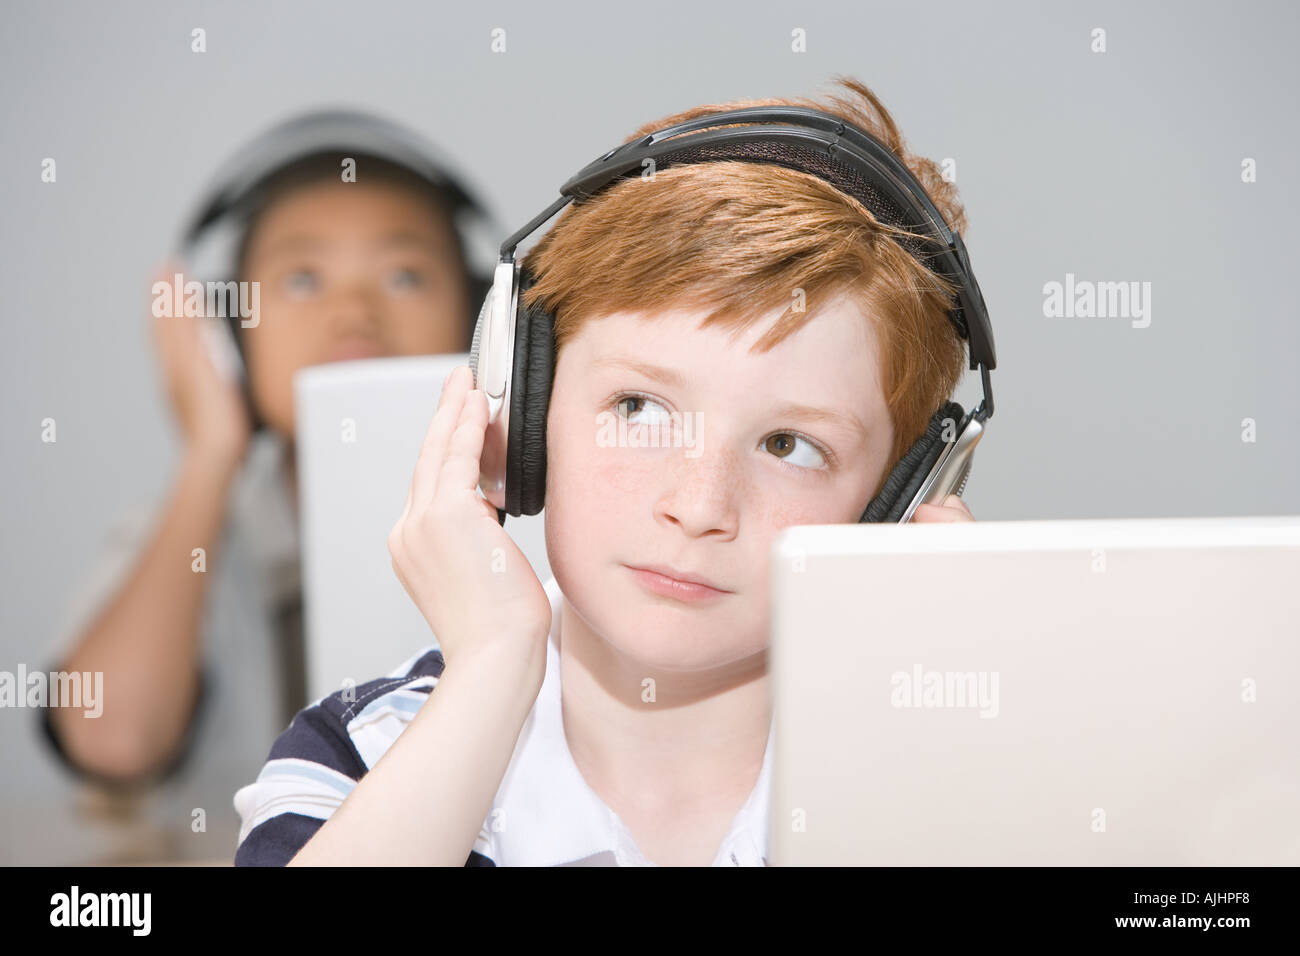 Boys listening to headphones Stock Photo